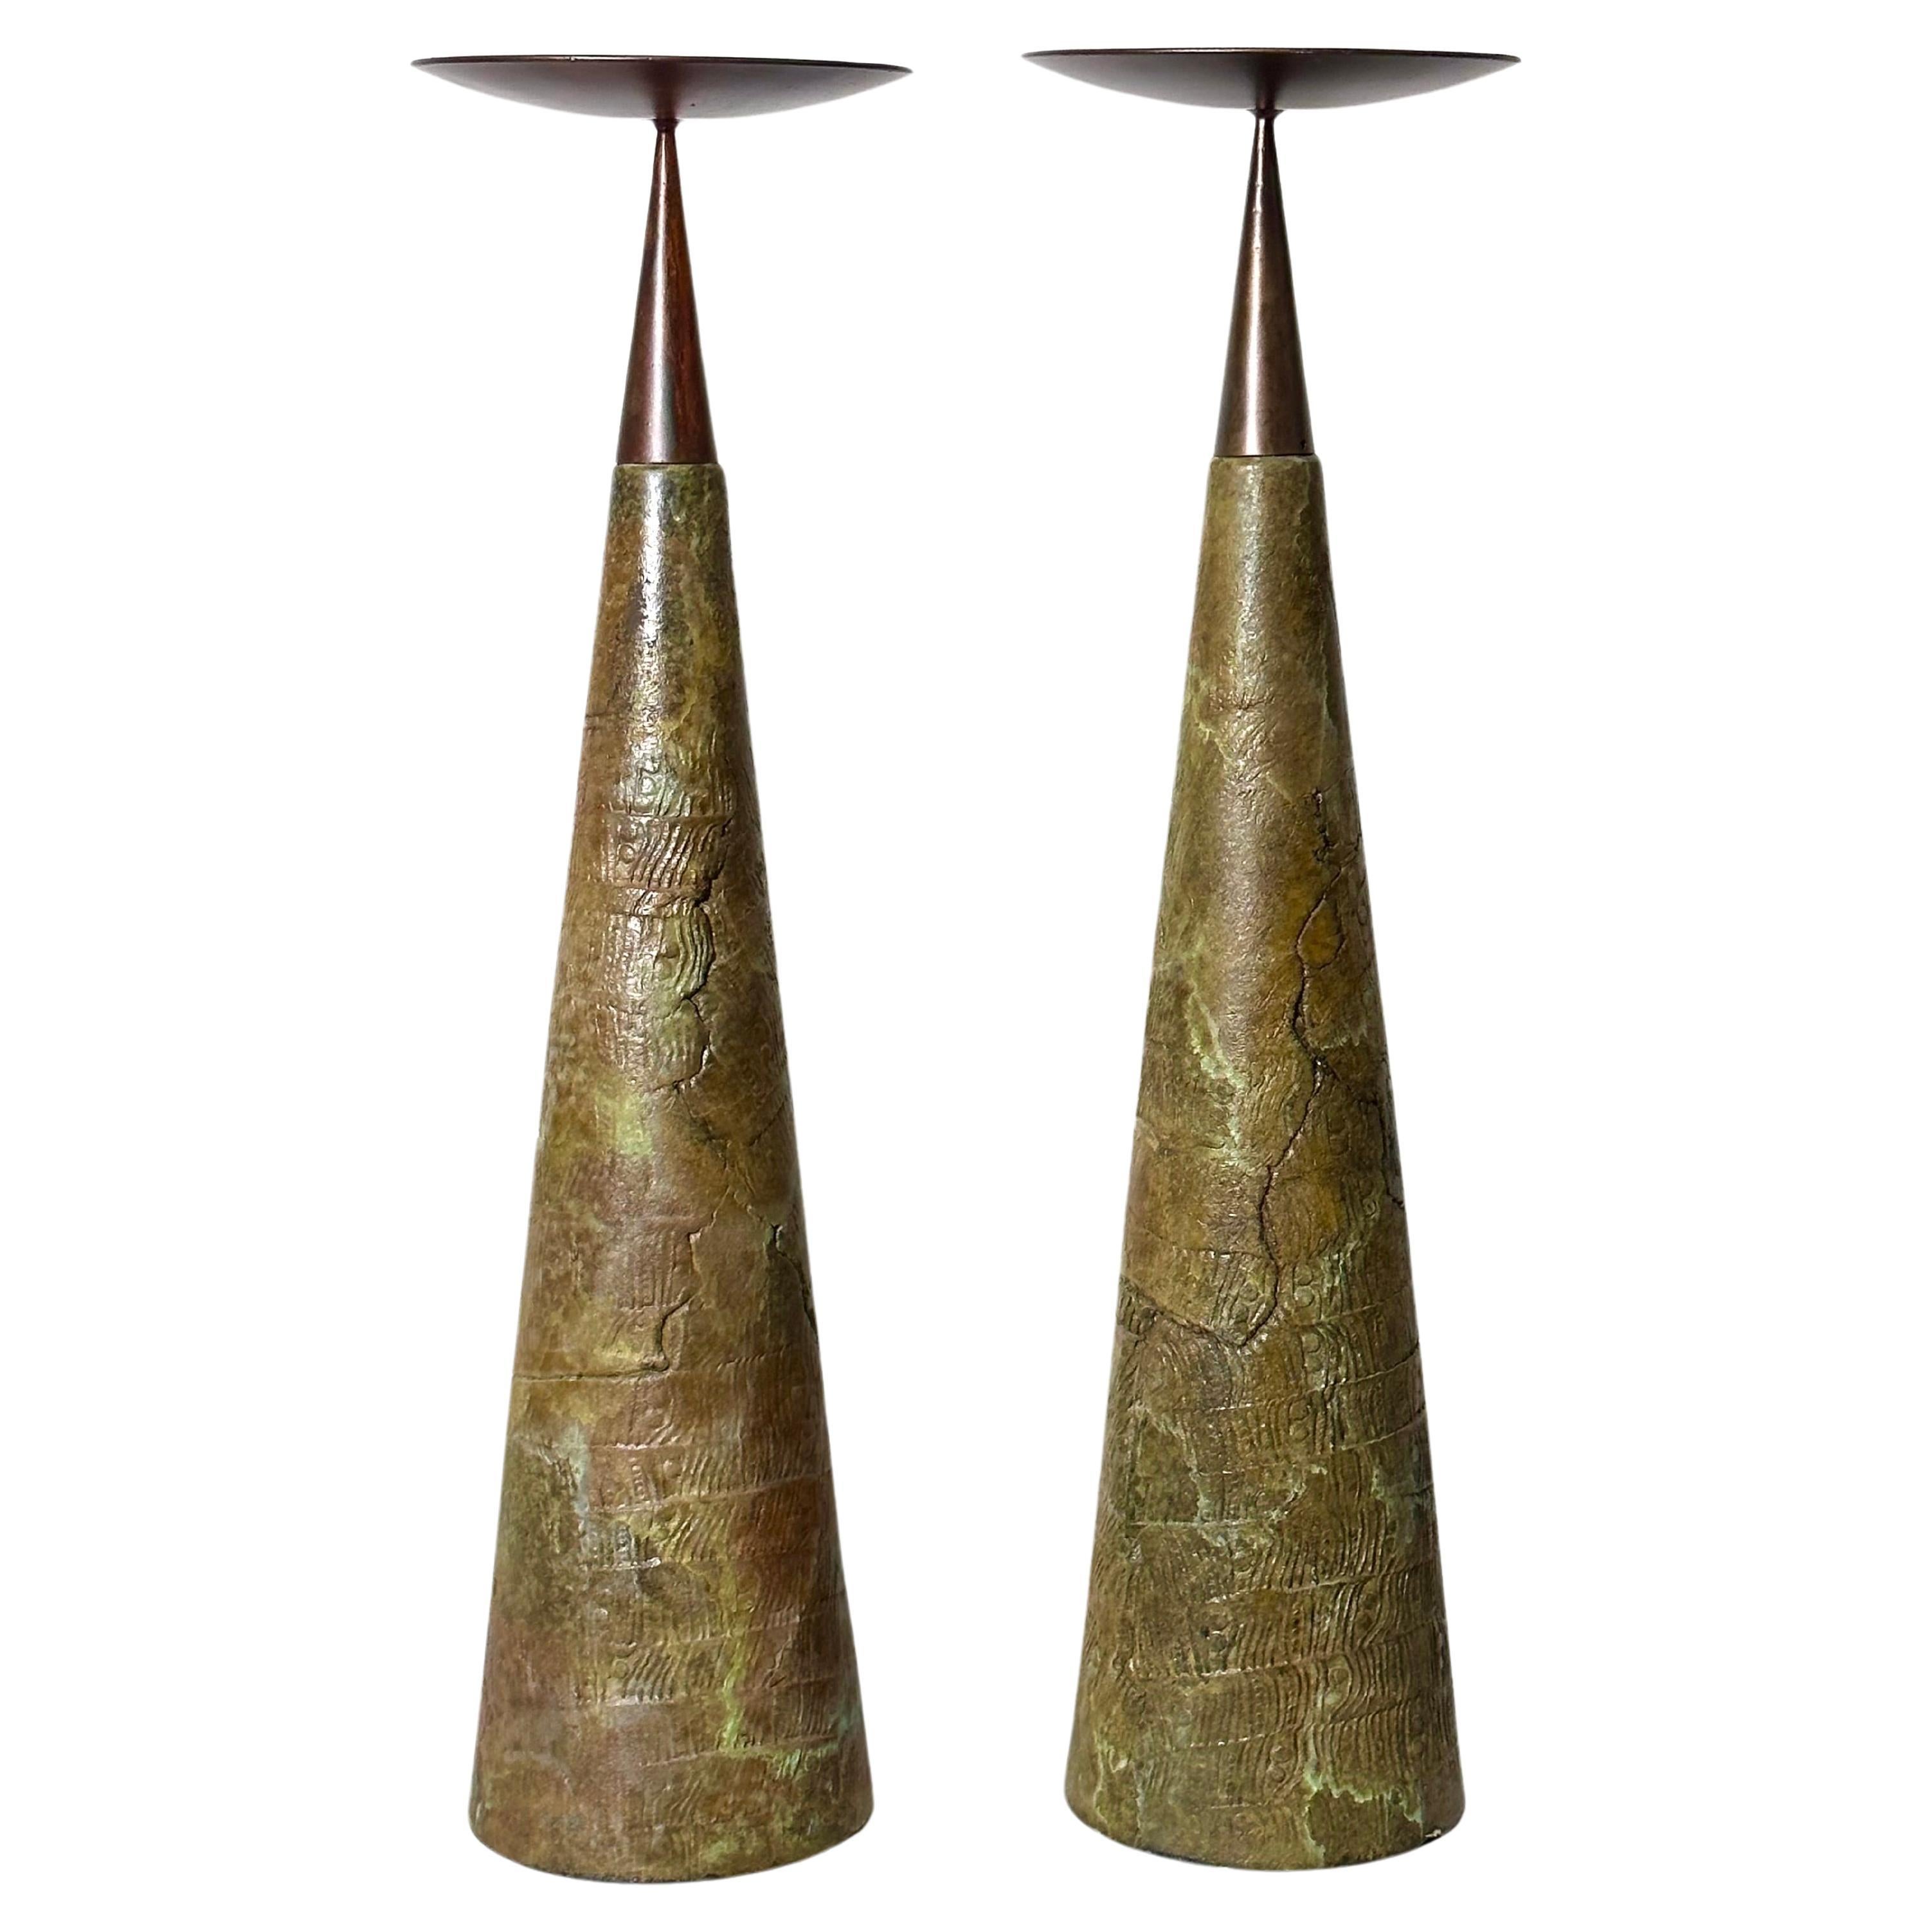 Paire monumentale de chandeliers coniques à pilier en céramique et bronze de Tony Evans, années 1980